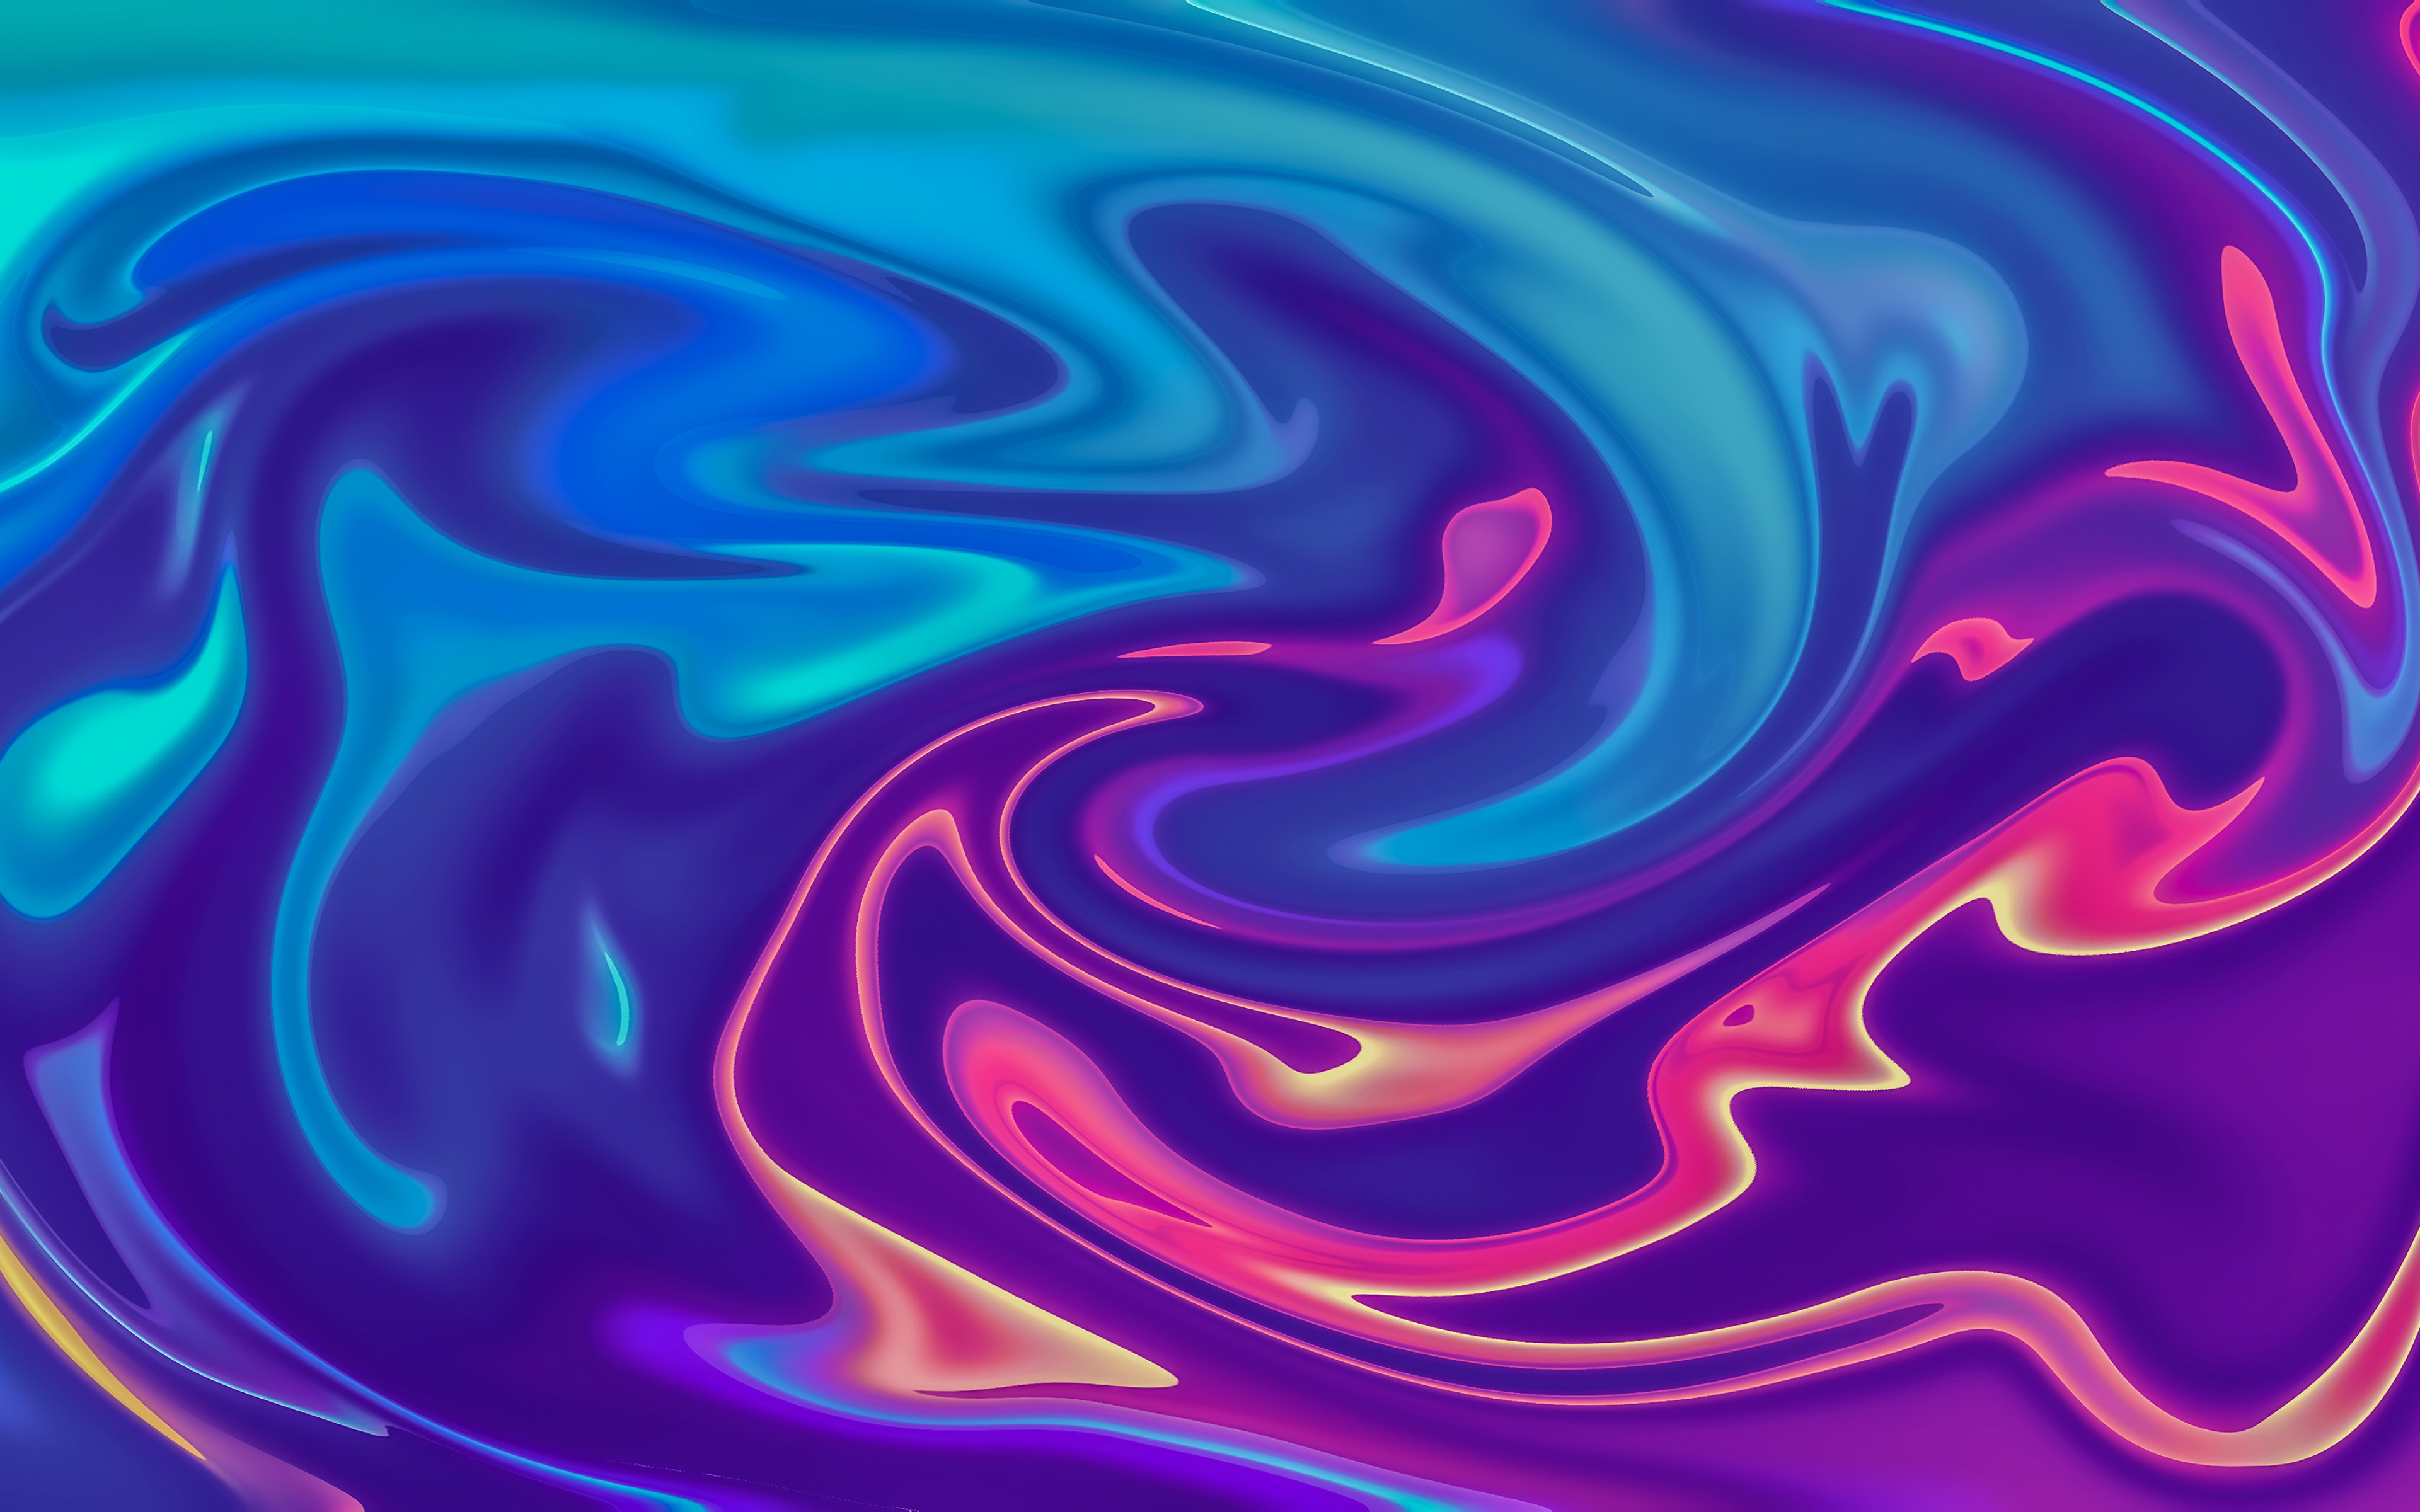 Download wallpapers violet liquid background, 4k, liquid textures, waves textures, wavy